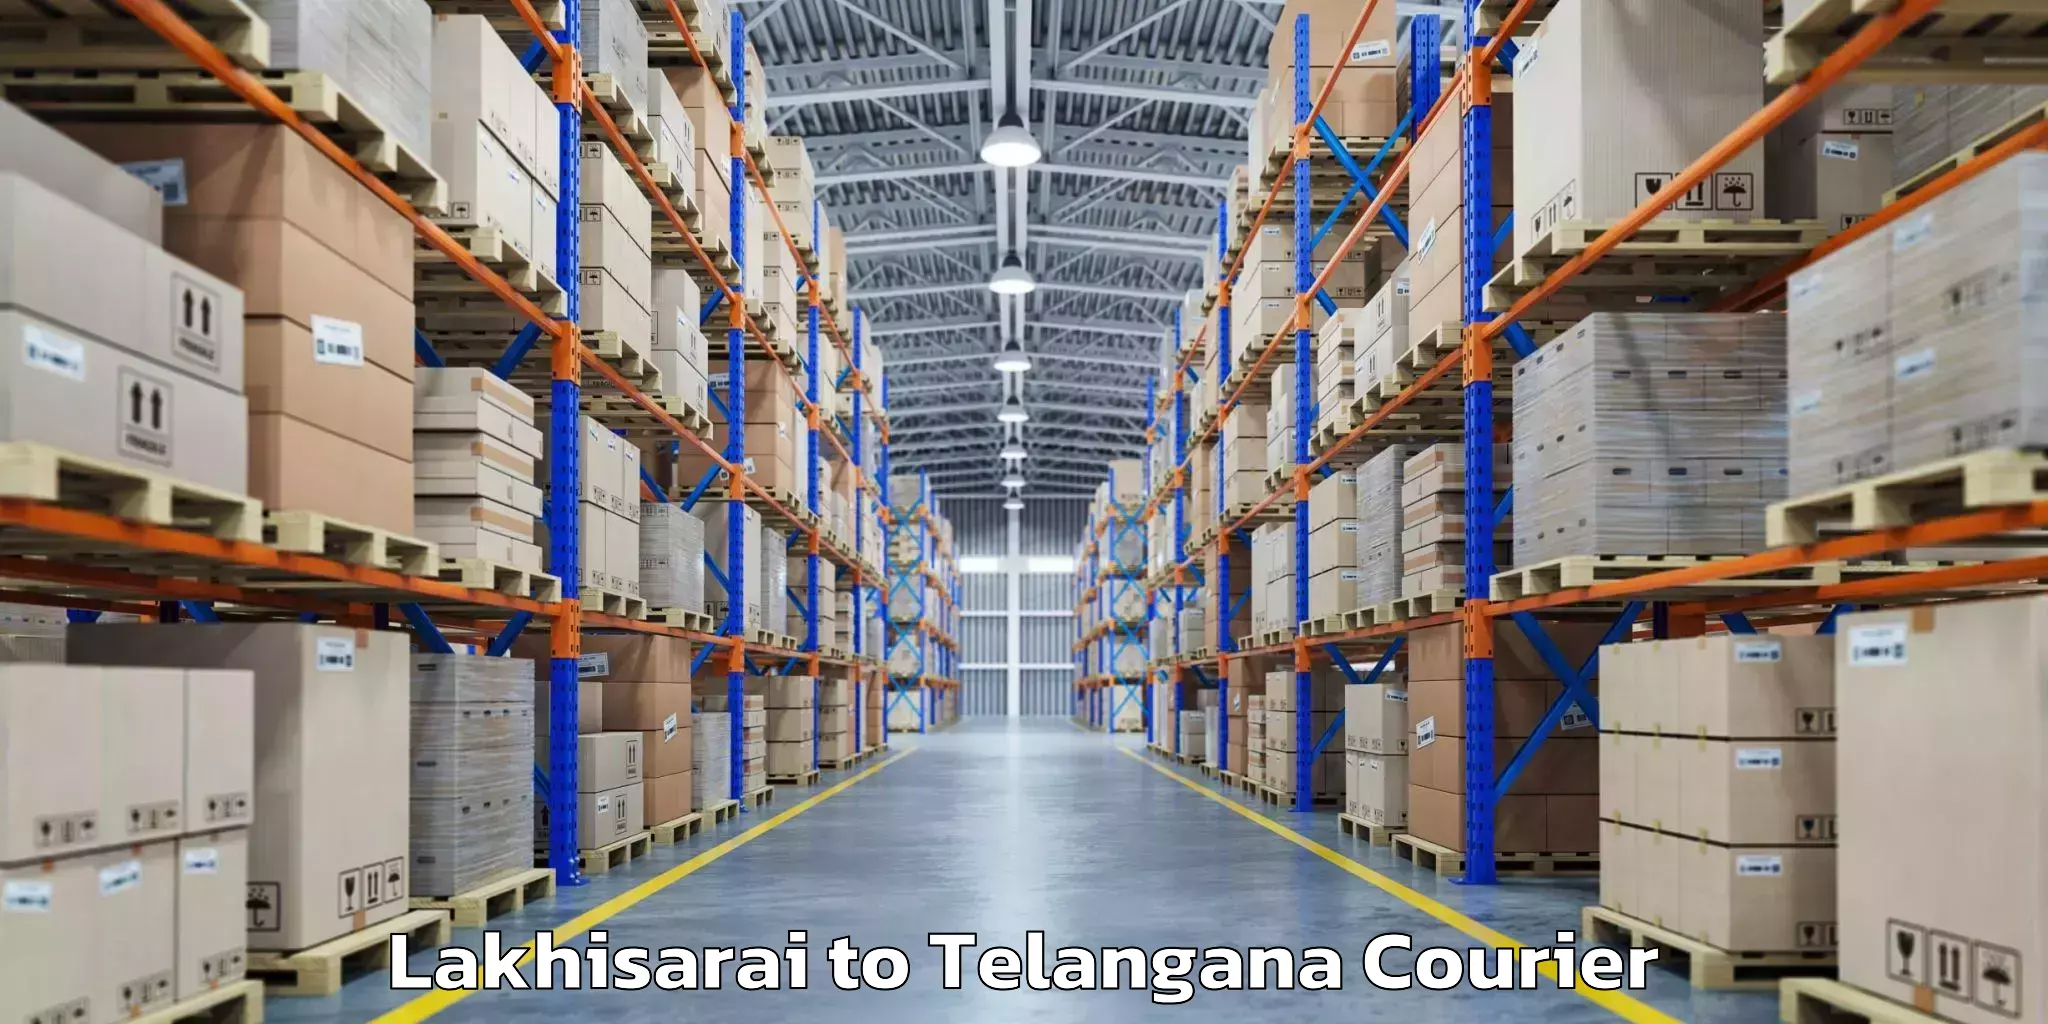 Baggage transport professionals Lakhisarai to Telangana